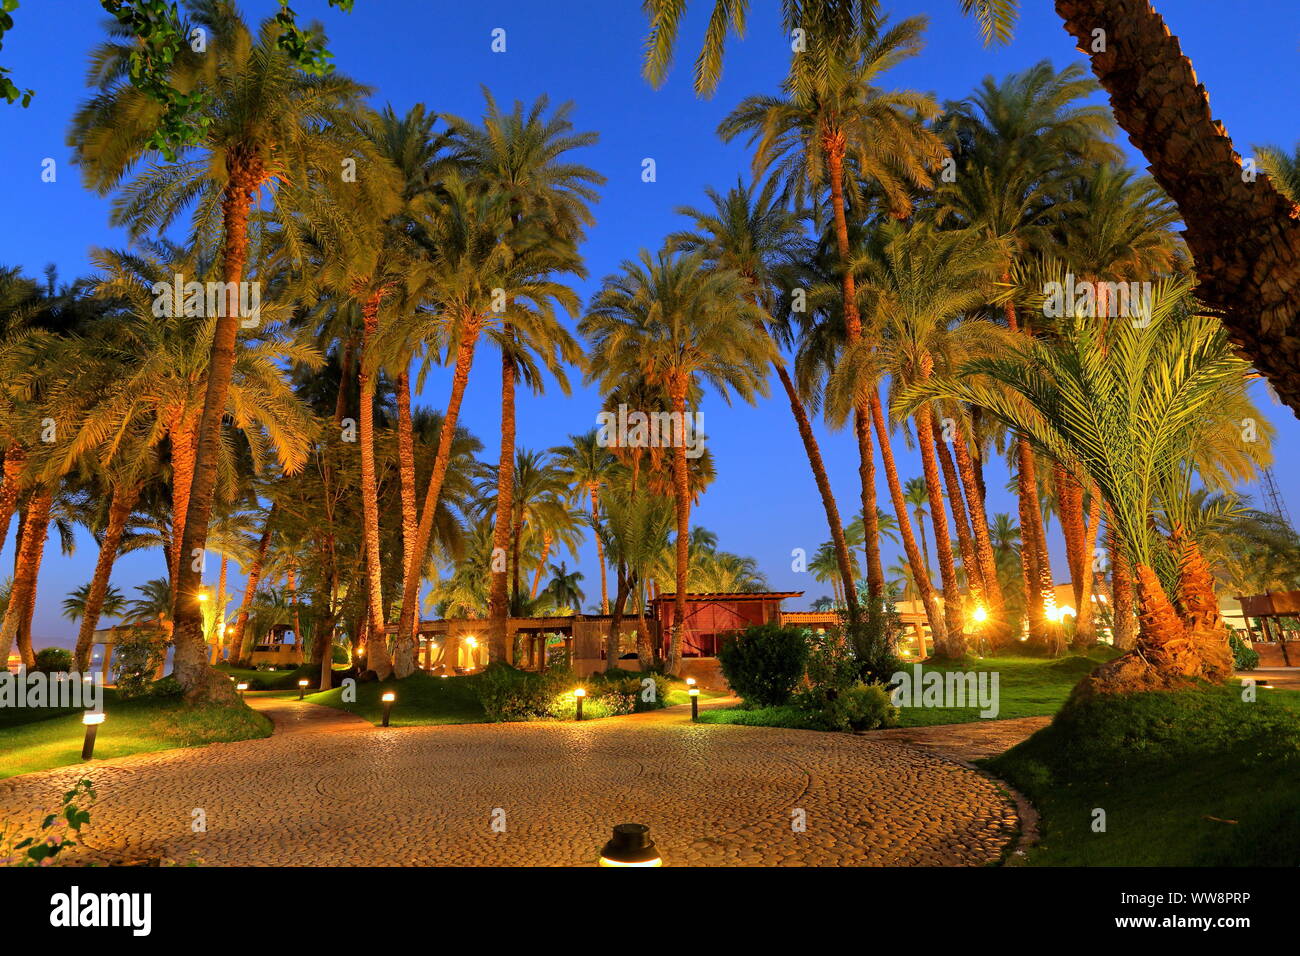 El Palm Garden del Hotel Mercure, cerca de Karnak Luxor, en el Alto Egipto, Egipto Foto de stock